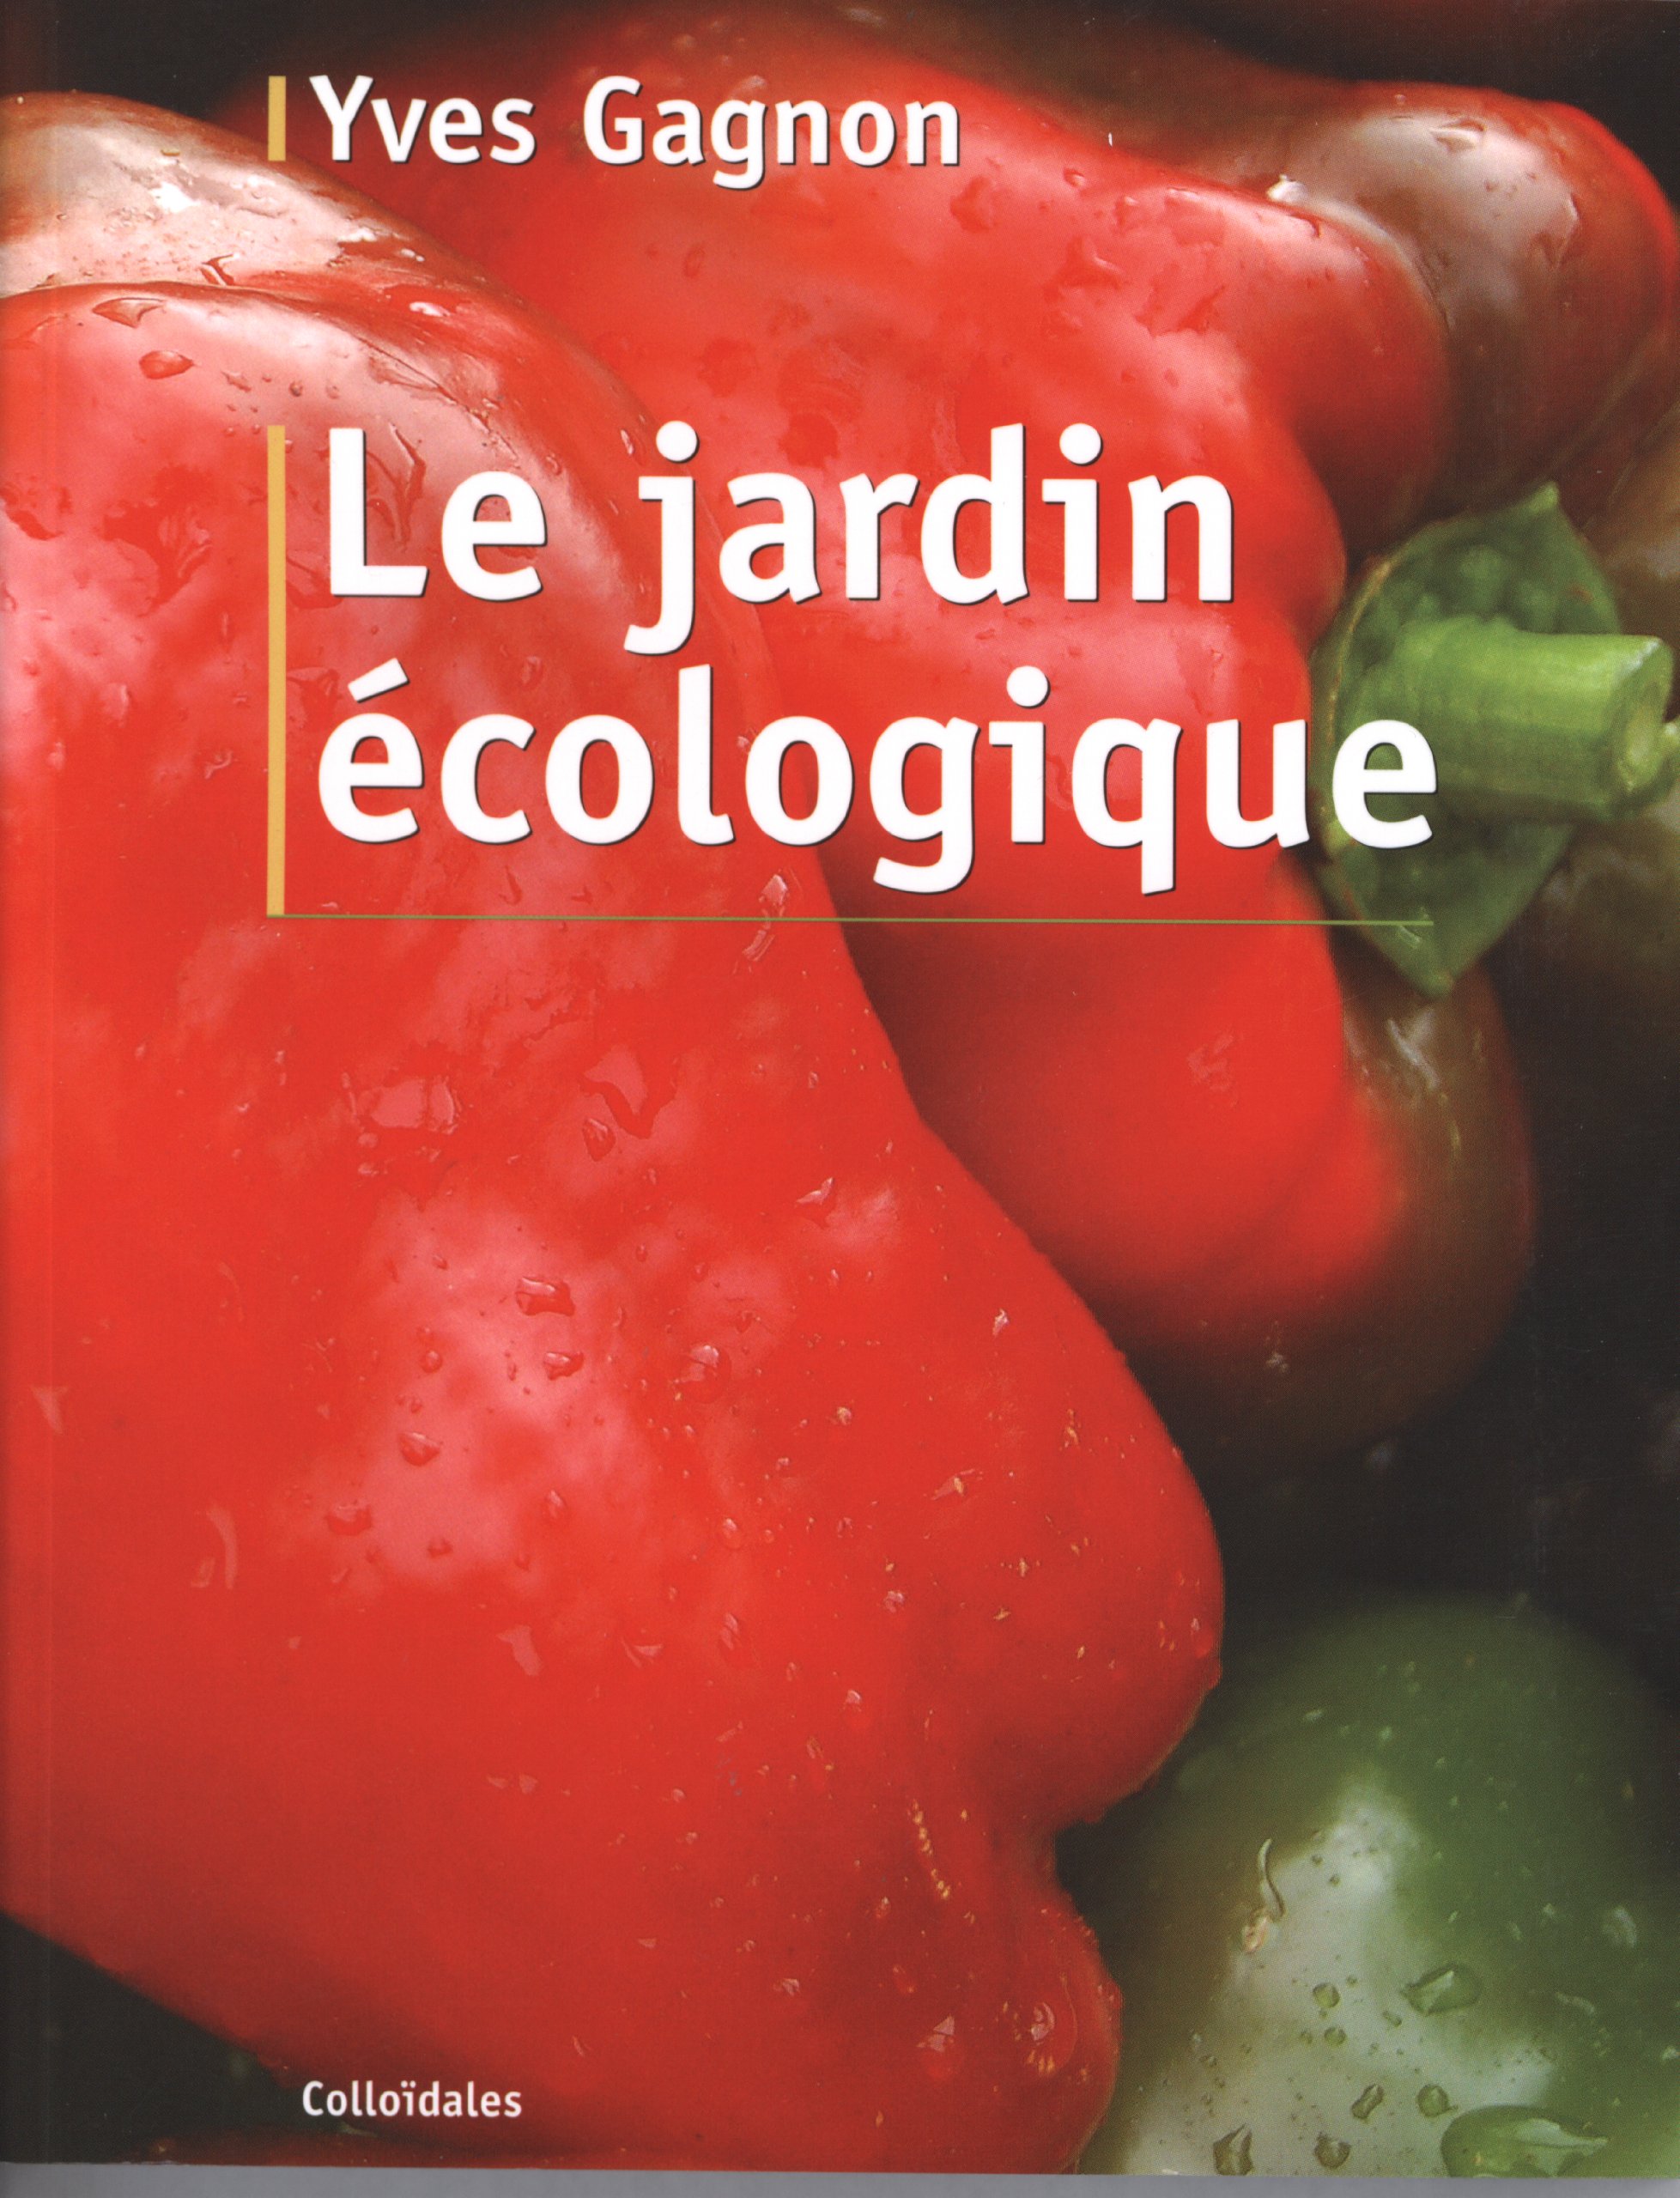 Le Jardin écologique, Yves Gagnon, potager